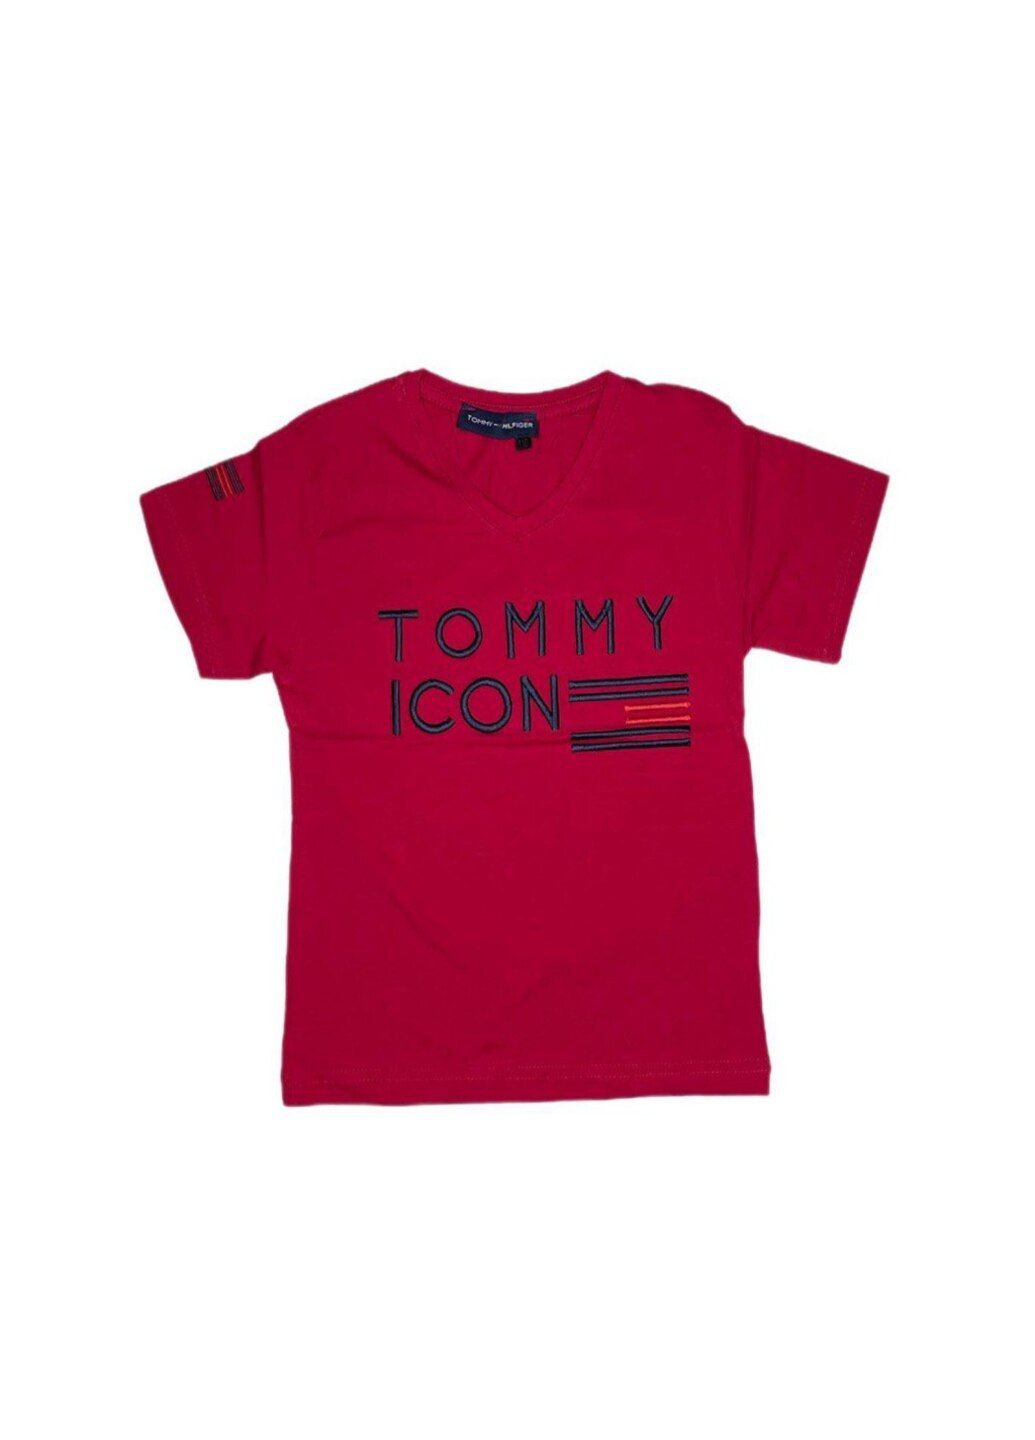 Бордовая футболка в бордовом цвете для мальчика. TOMMY